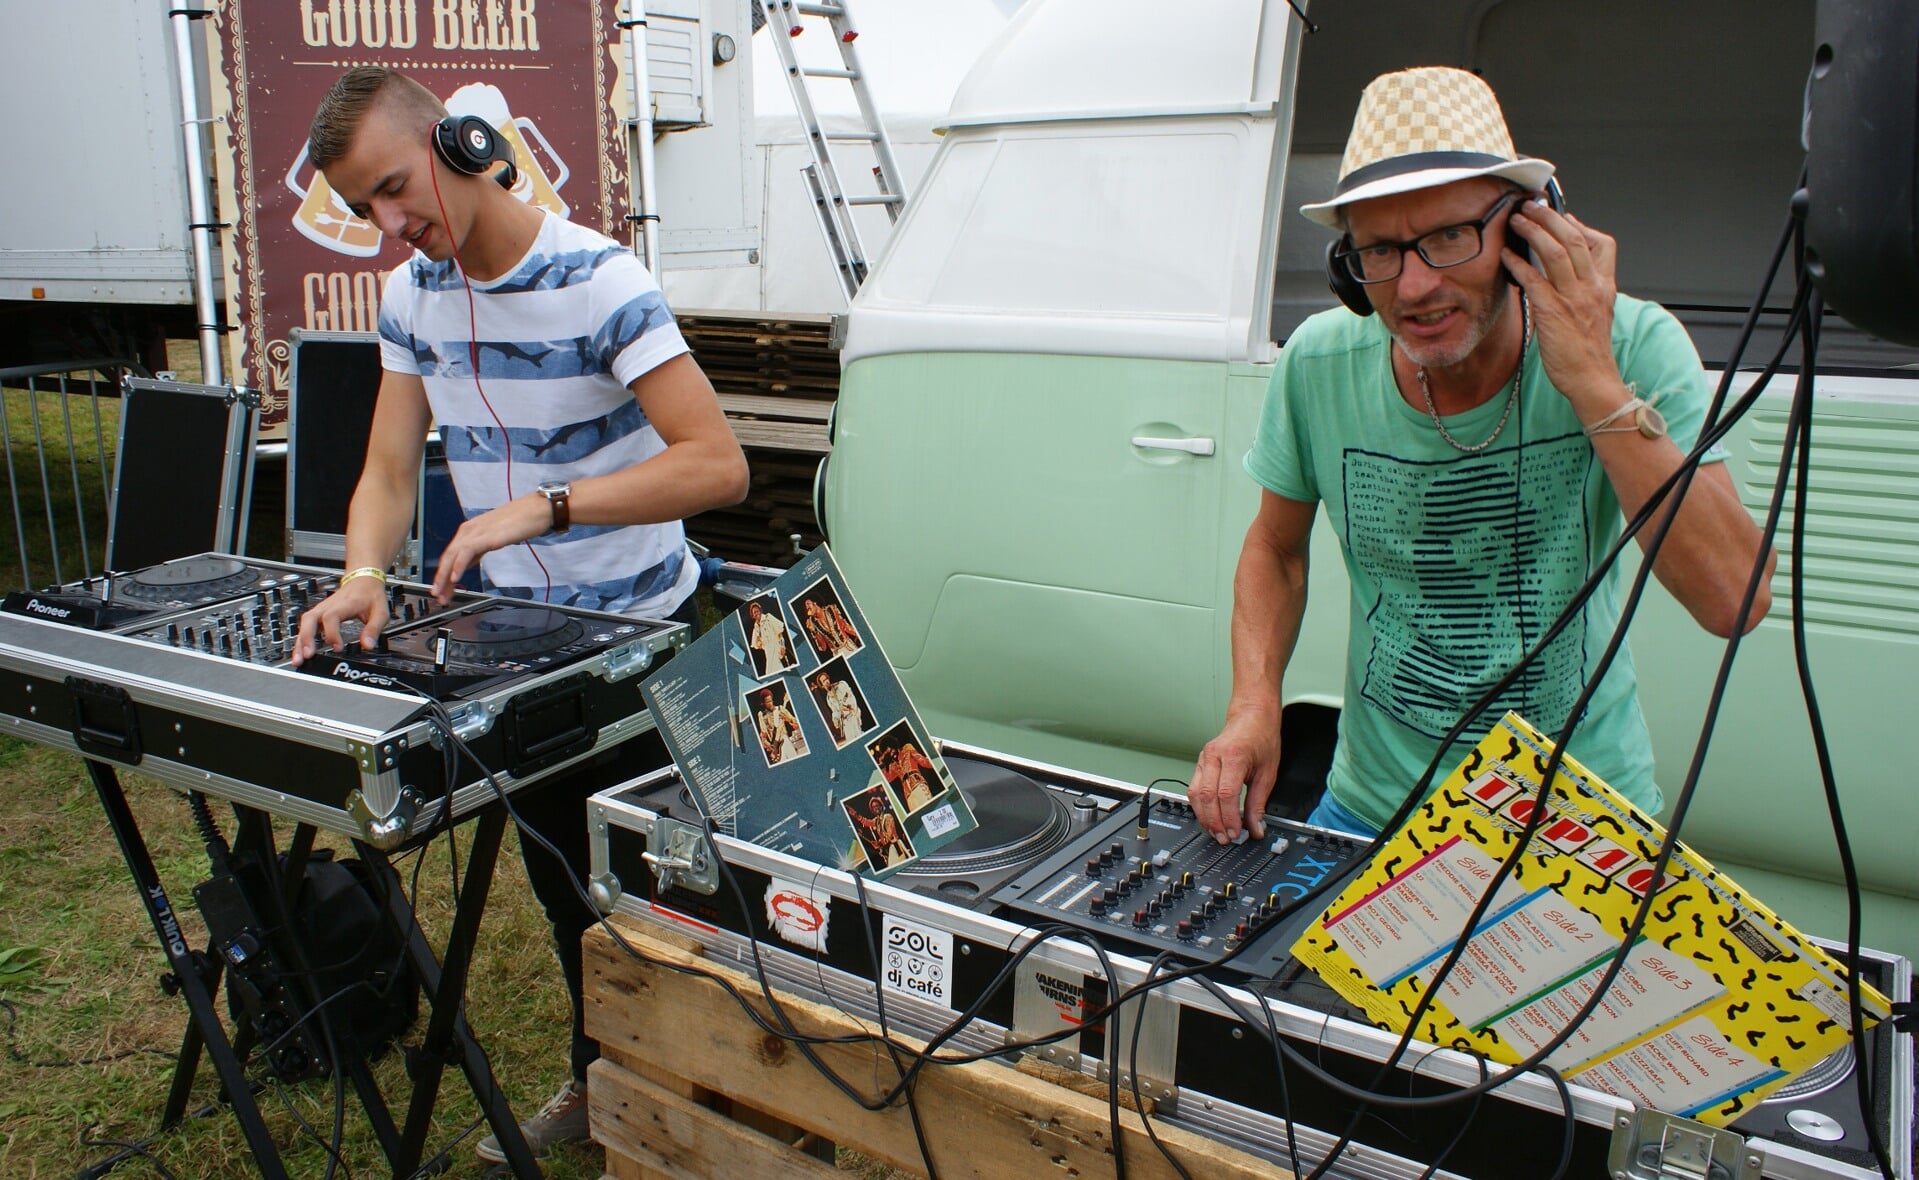 Vinyldiscjockey Ducko (rechts) draait platen uit de jaren zeventig en tachtig, naast hem dj K die moderne apparatuur gebruikt om hedendaagse dancemuziek te draaien. (Foto: Marc Cleutjens).